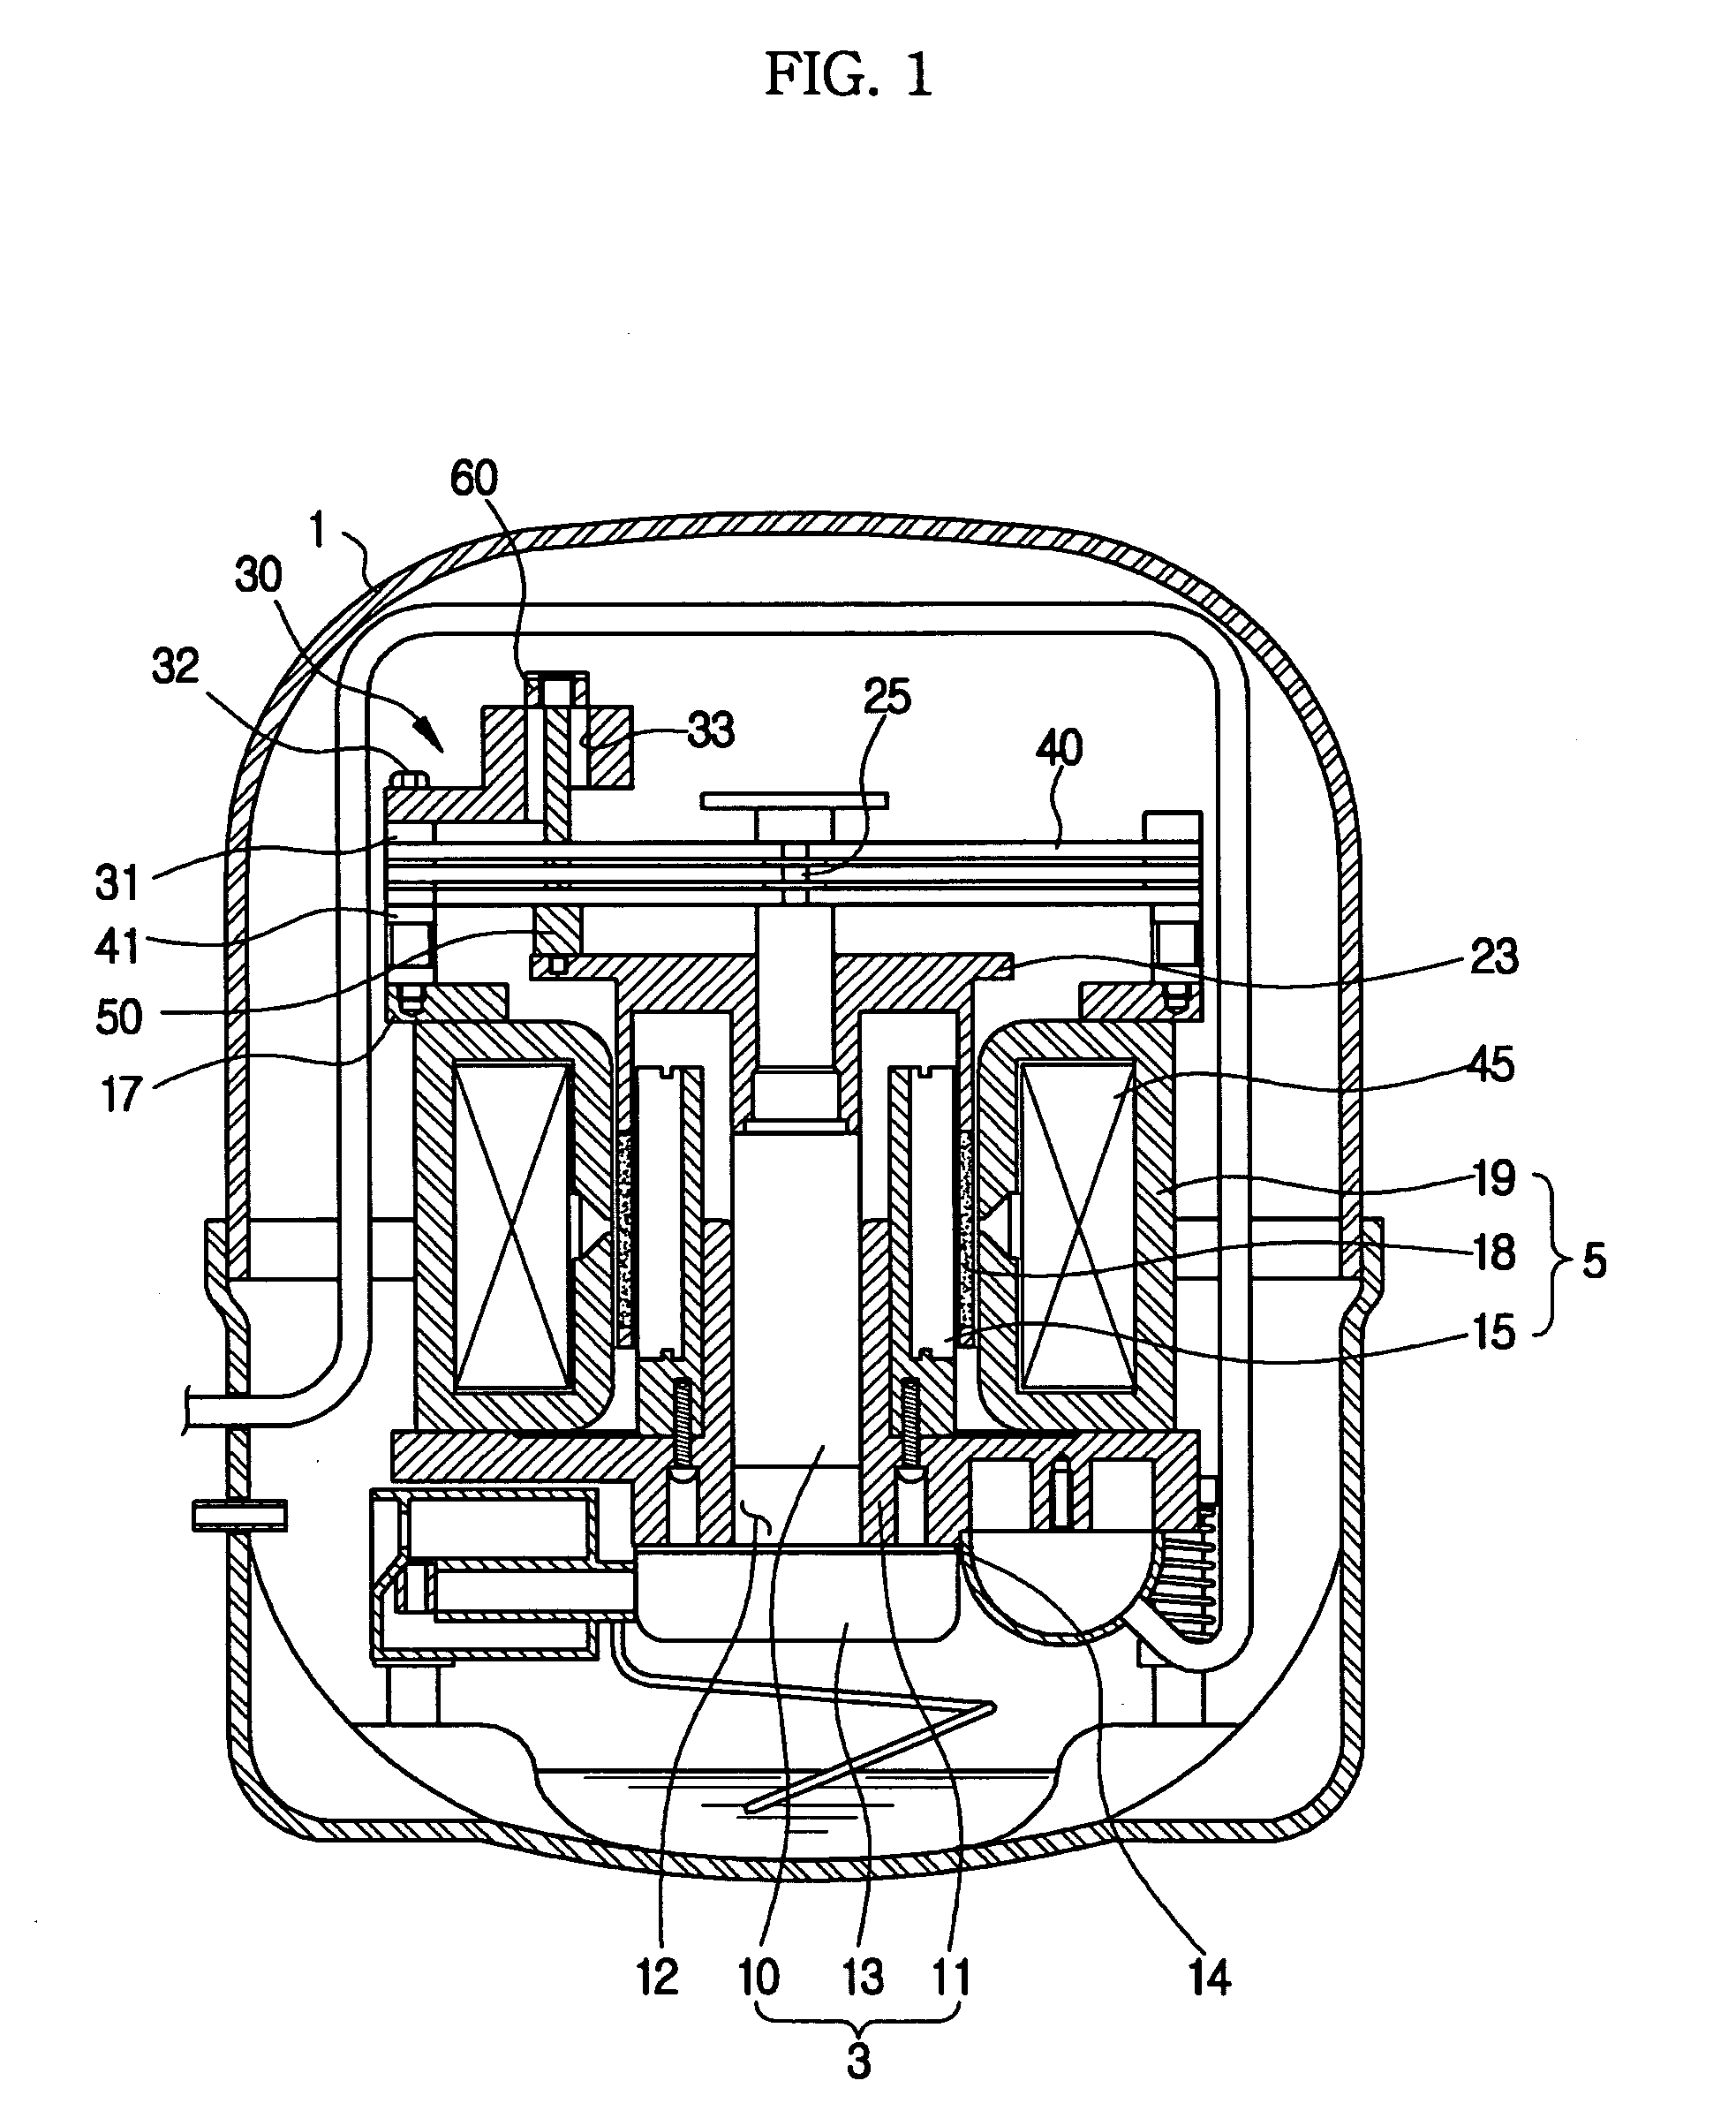 Linear compressor with sensor